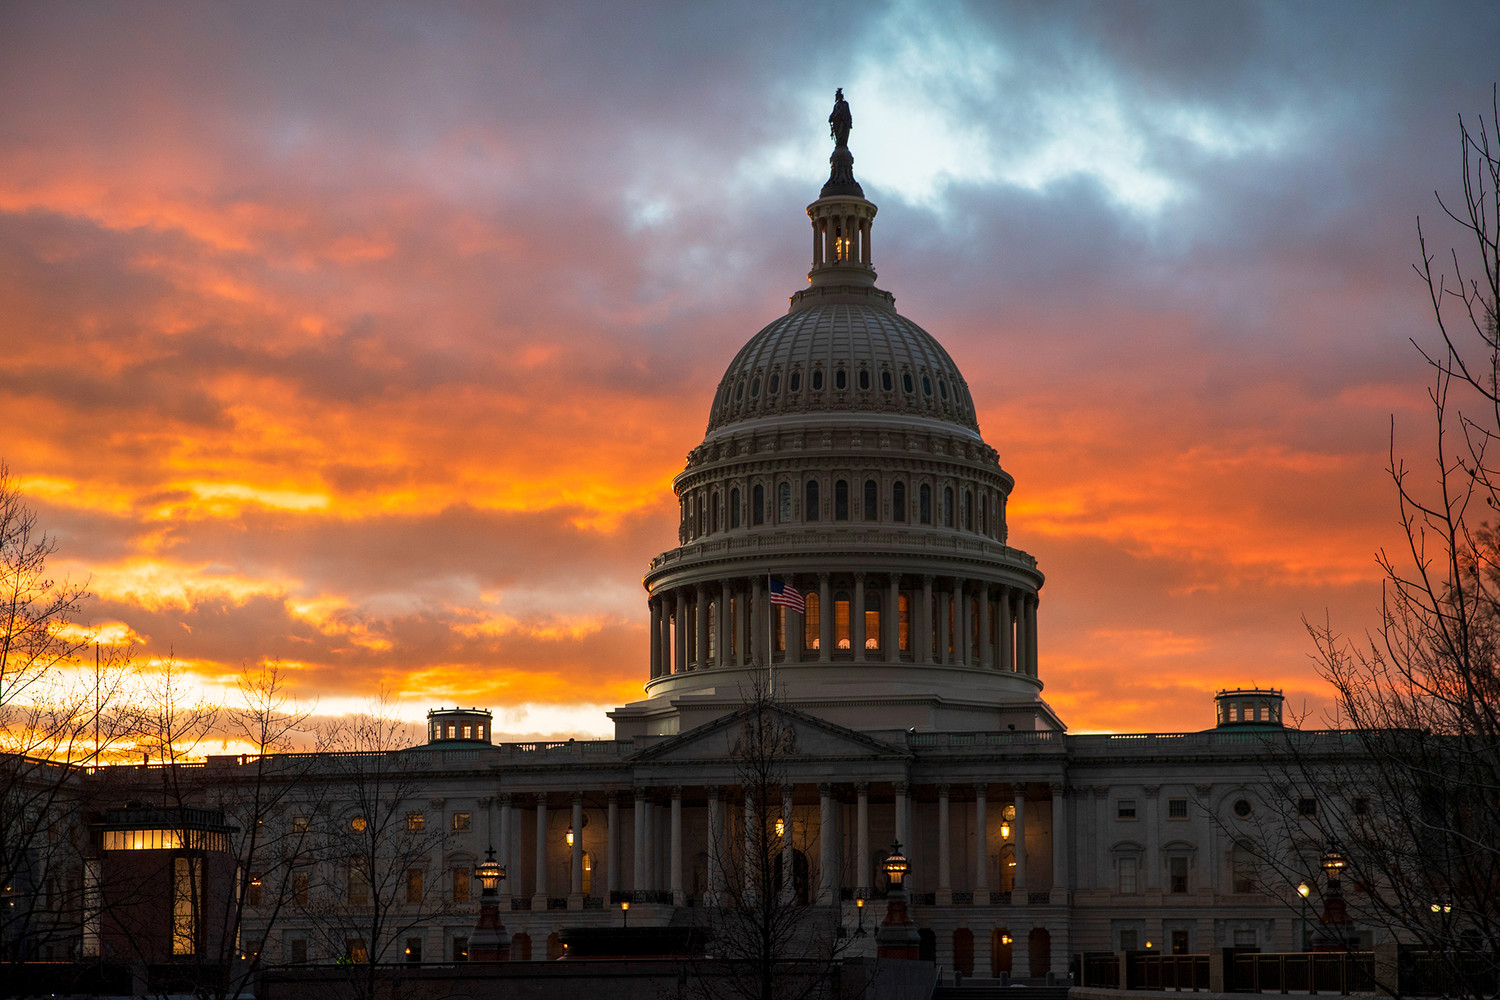 В сенате США заблокировали вынесение законопроекта о помощи Украине на голосование